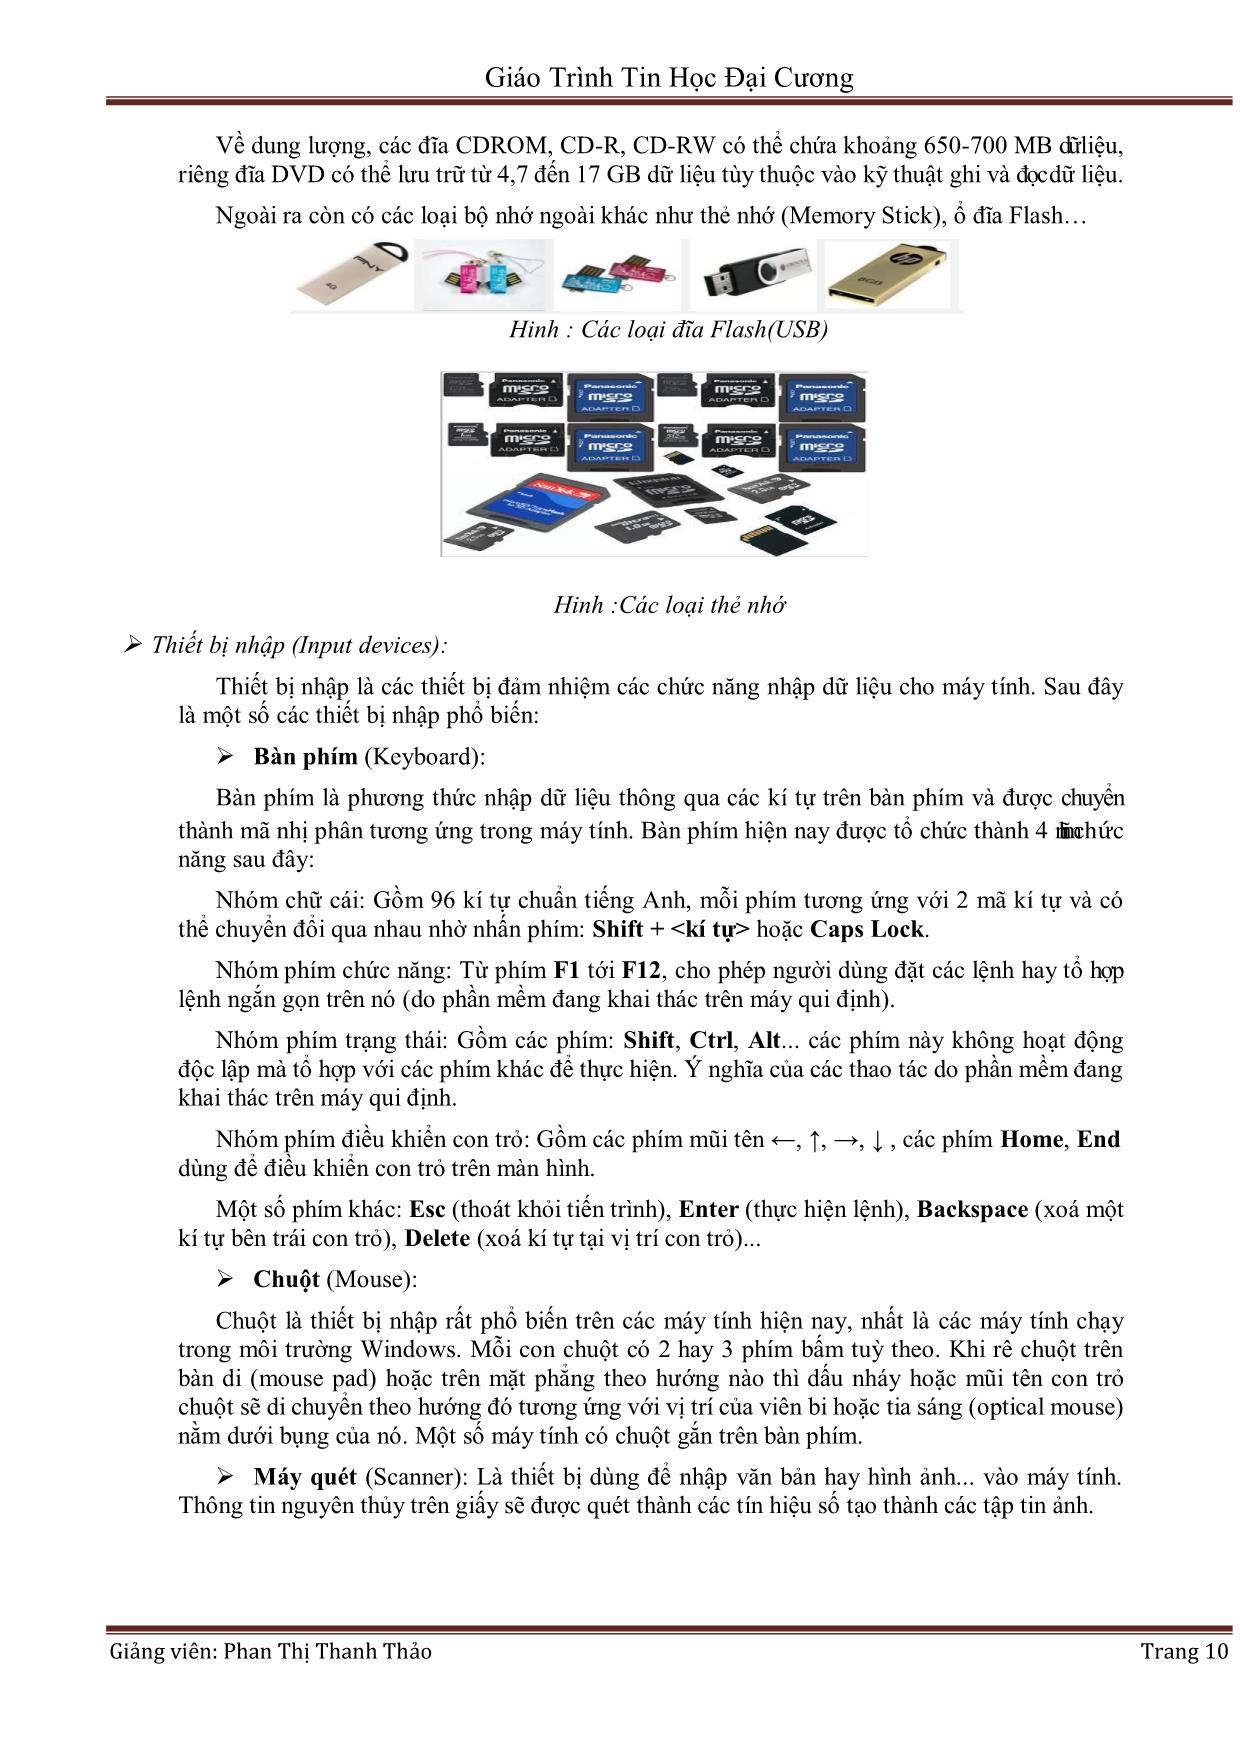 Giáo trình Tin học đại cương (Phần 1) - Phan Thị Thanh Thảo trang 10